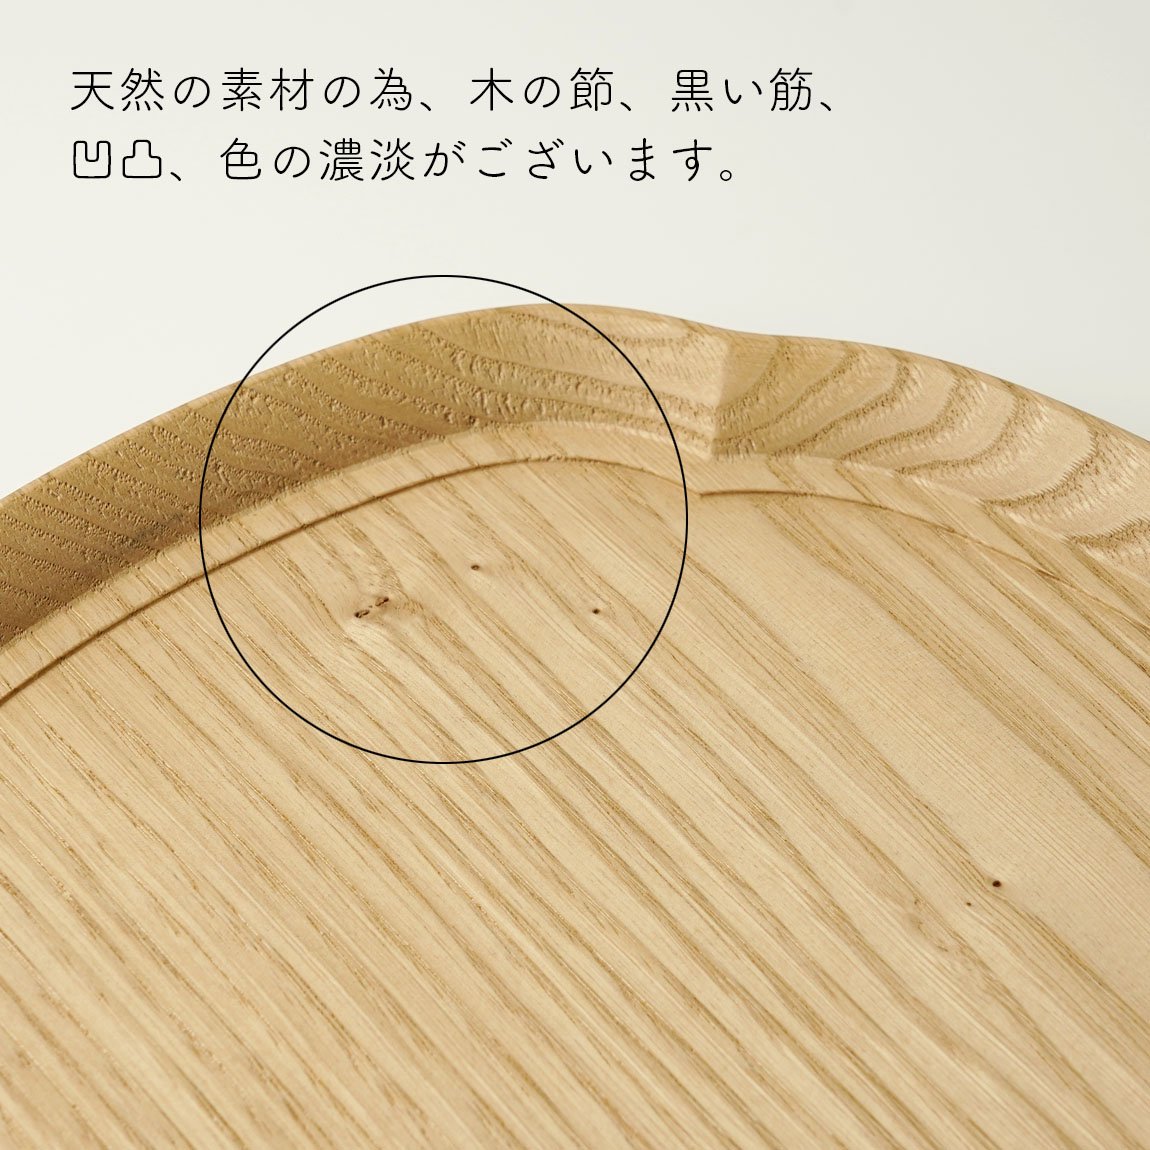 四十沢木材工芸 輪花盆 ケヤキ 木製トレー10